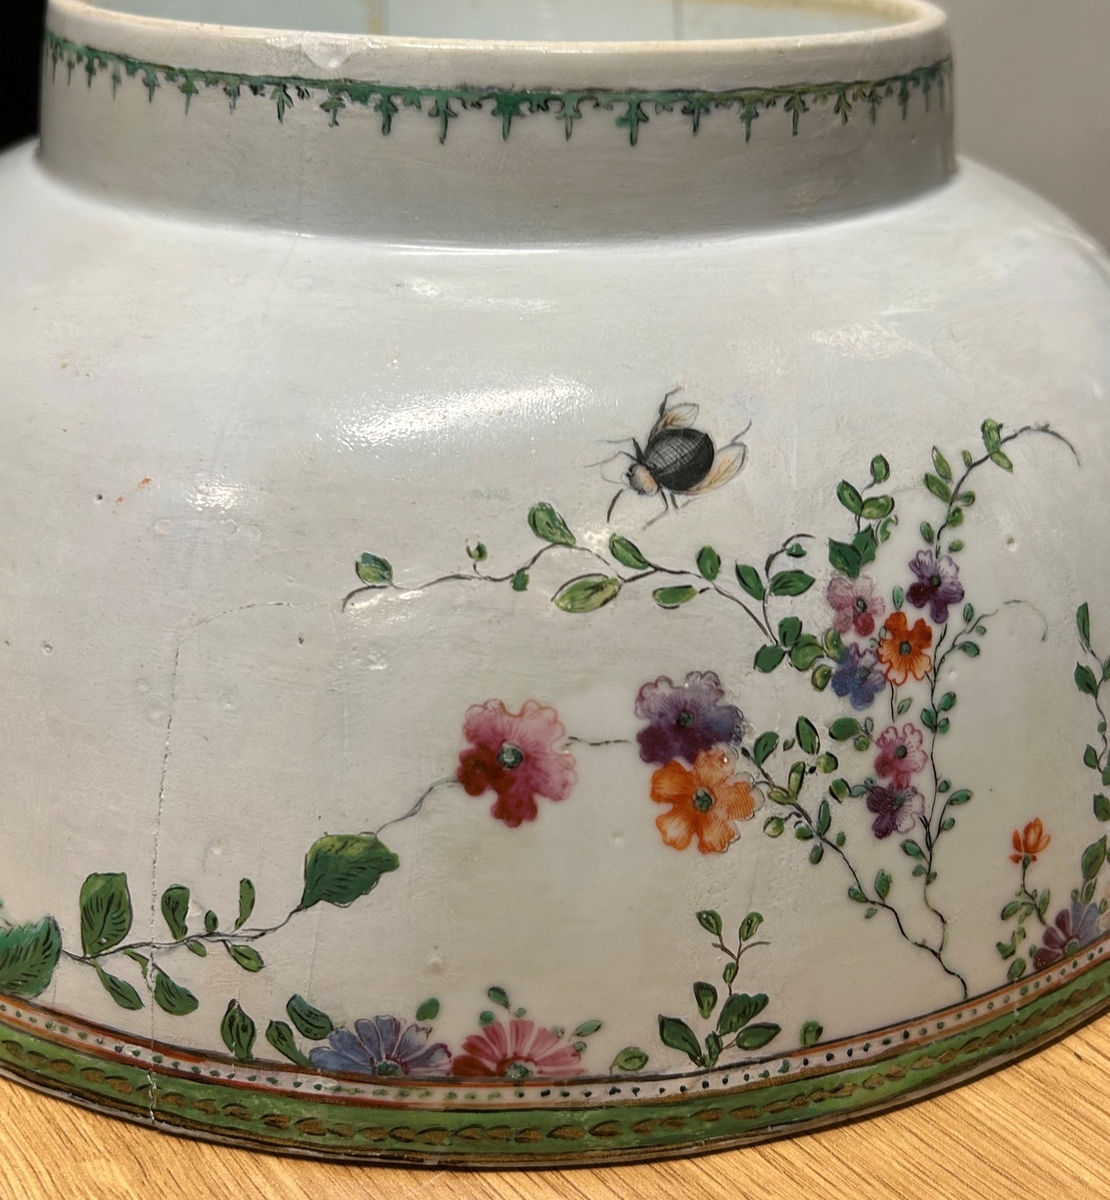 Vit cirkelformad skål av ostindiskt kompaniporslin med blommor i grönt, guld och rött, två fjärilar, en husfluga och en skalbagge. En markerad målad kant upptill utan och innanför på skålen. En blomma på botten av bålskålen. 1700-tal.